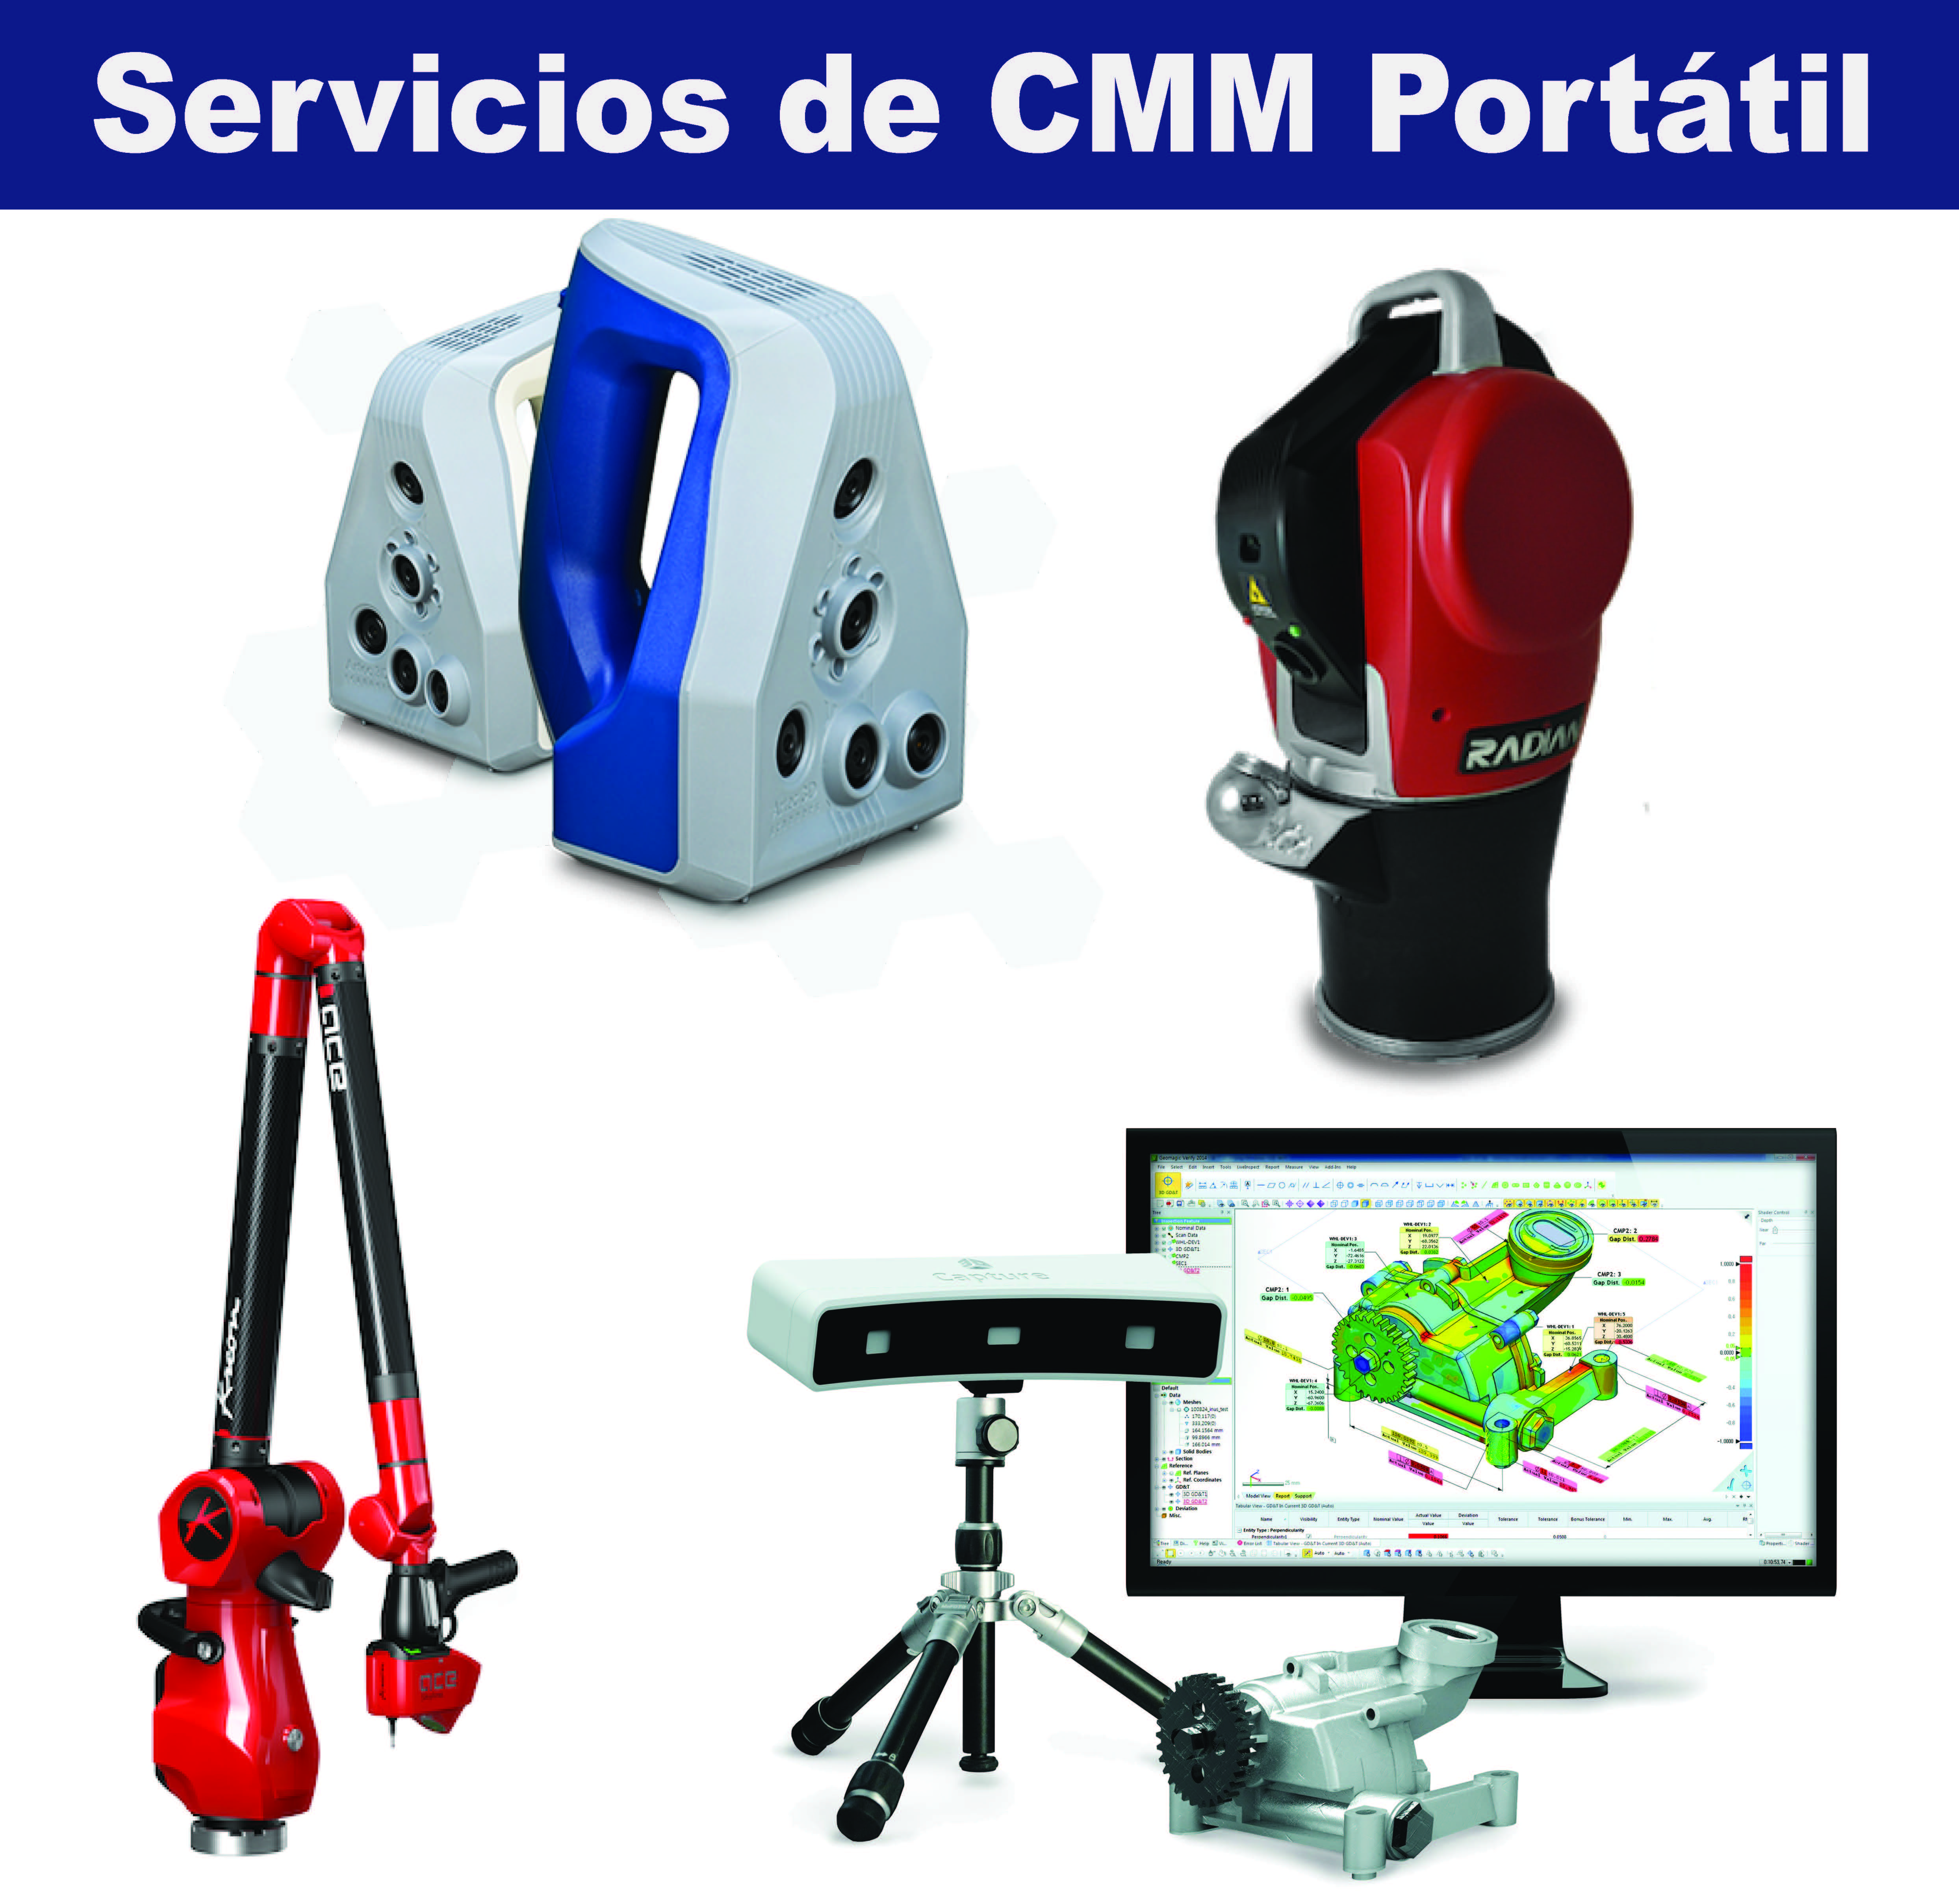 Servicios de CMM Portatil